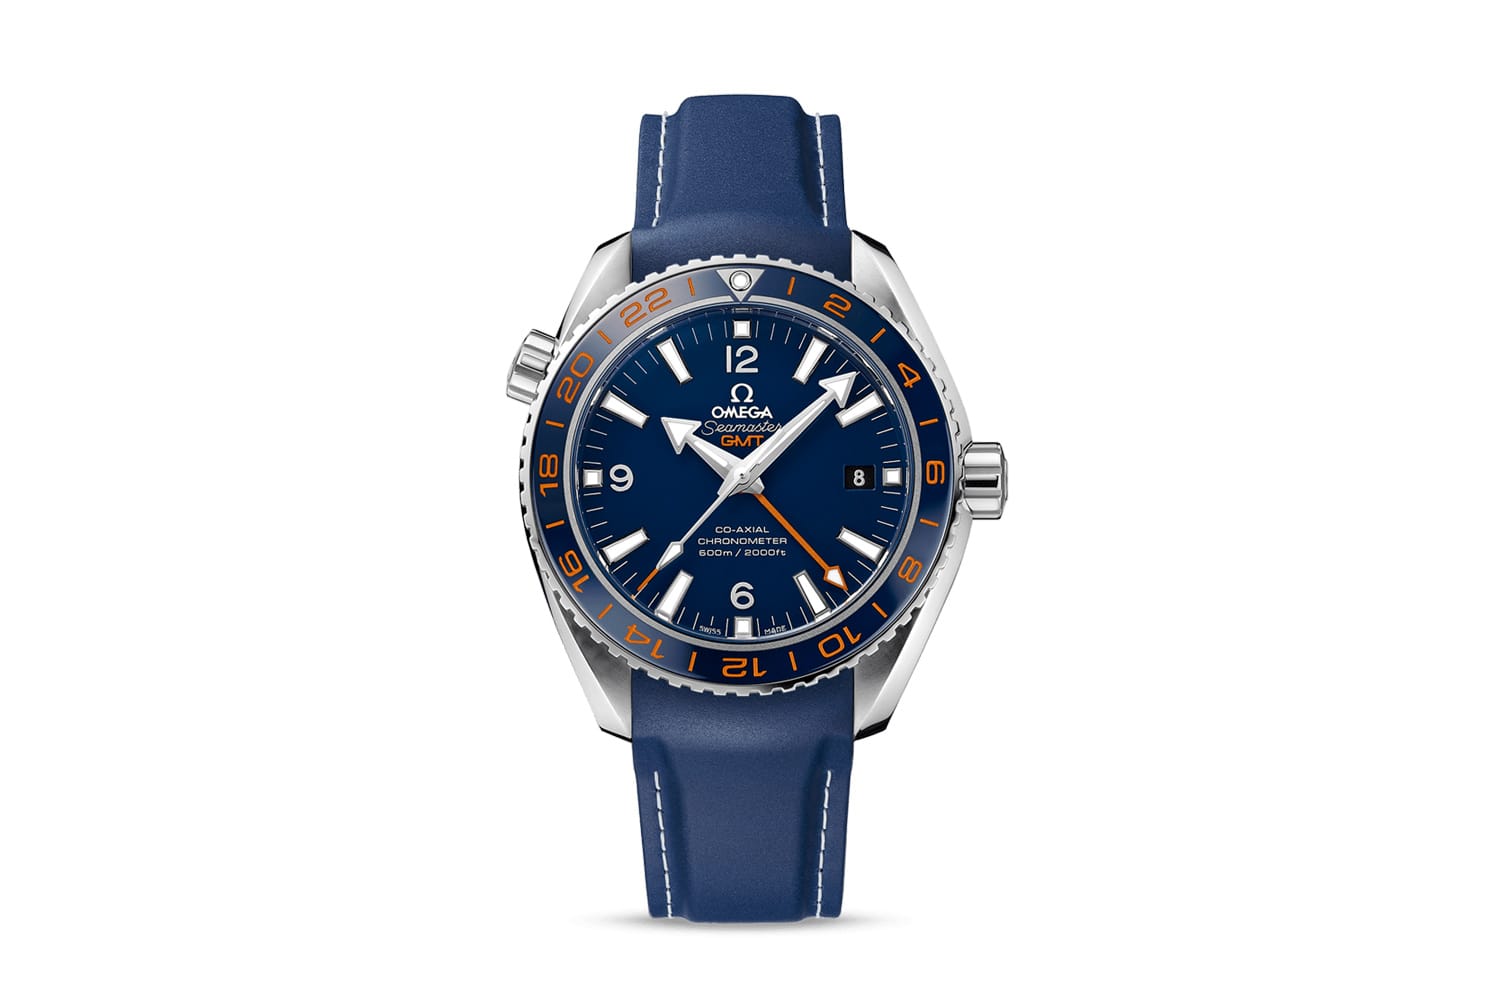 Für sportliche Weltumsegler bietet die Omega Seamaster Planet Ocean GMT (ab 5740 Euro) einen maritimen Look in dunklem Blau.